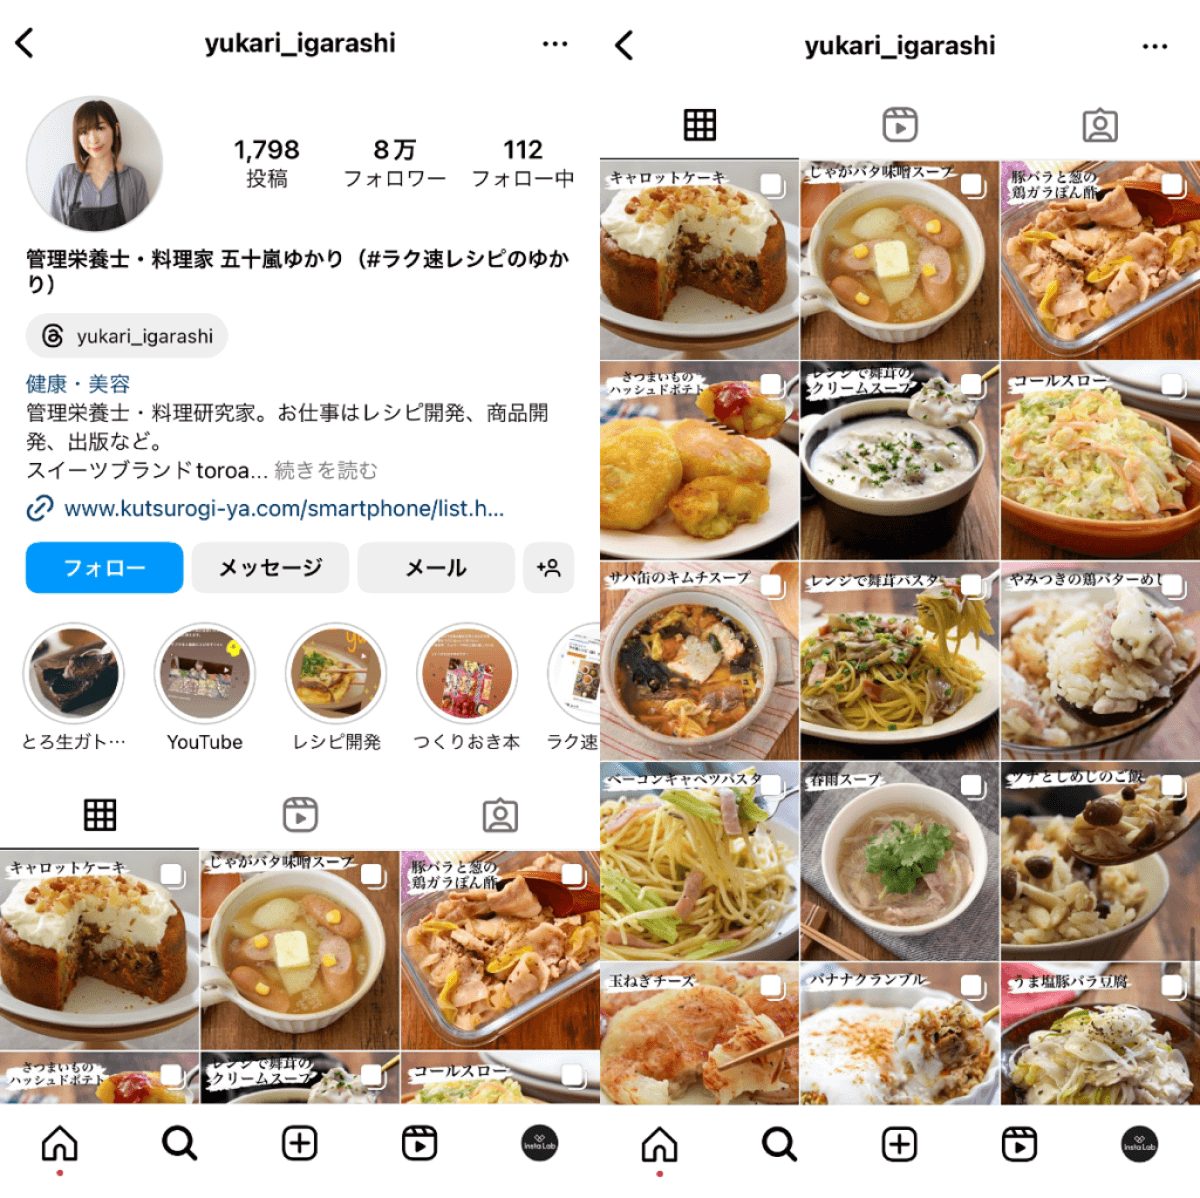 instagram-account-yukari-igarashi